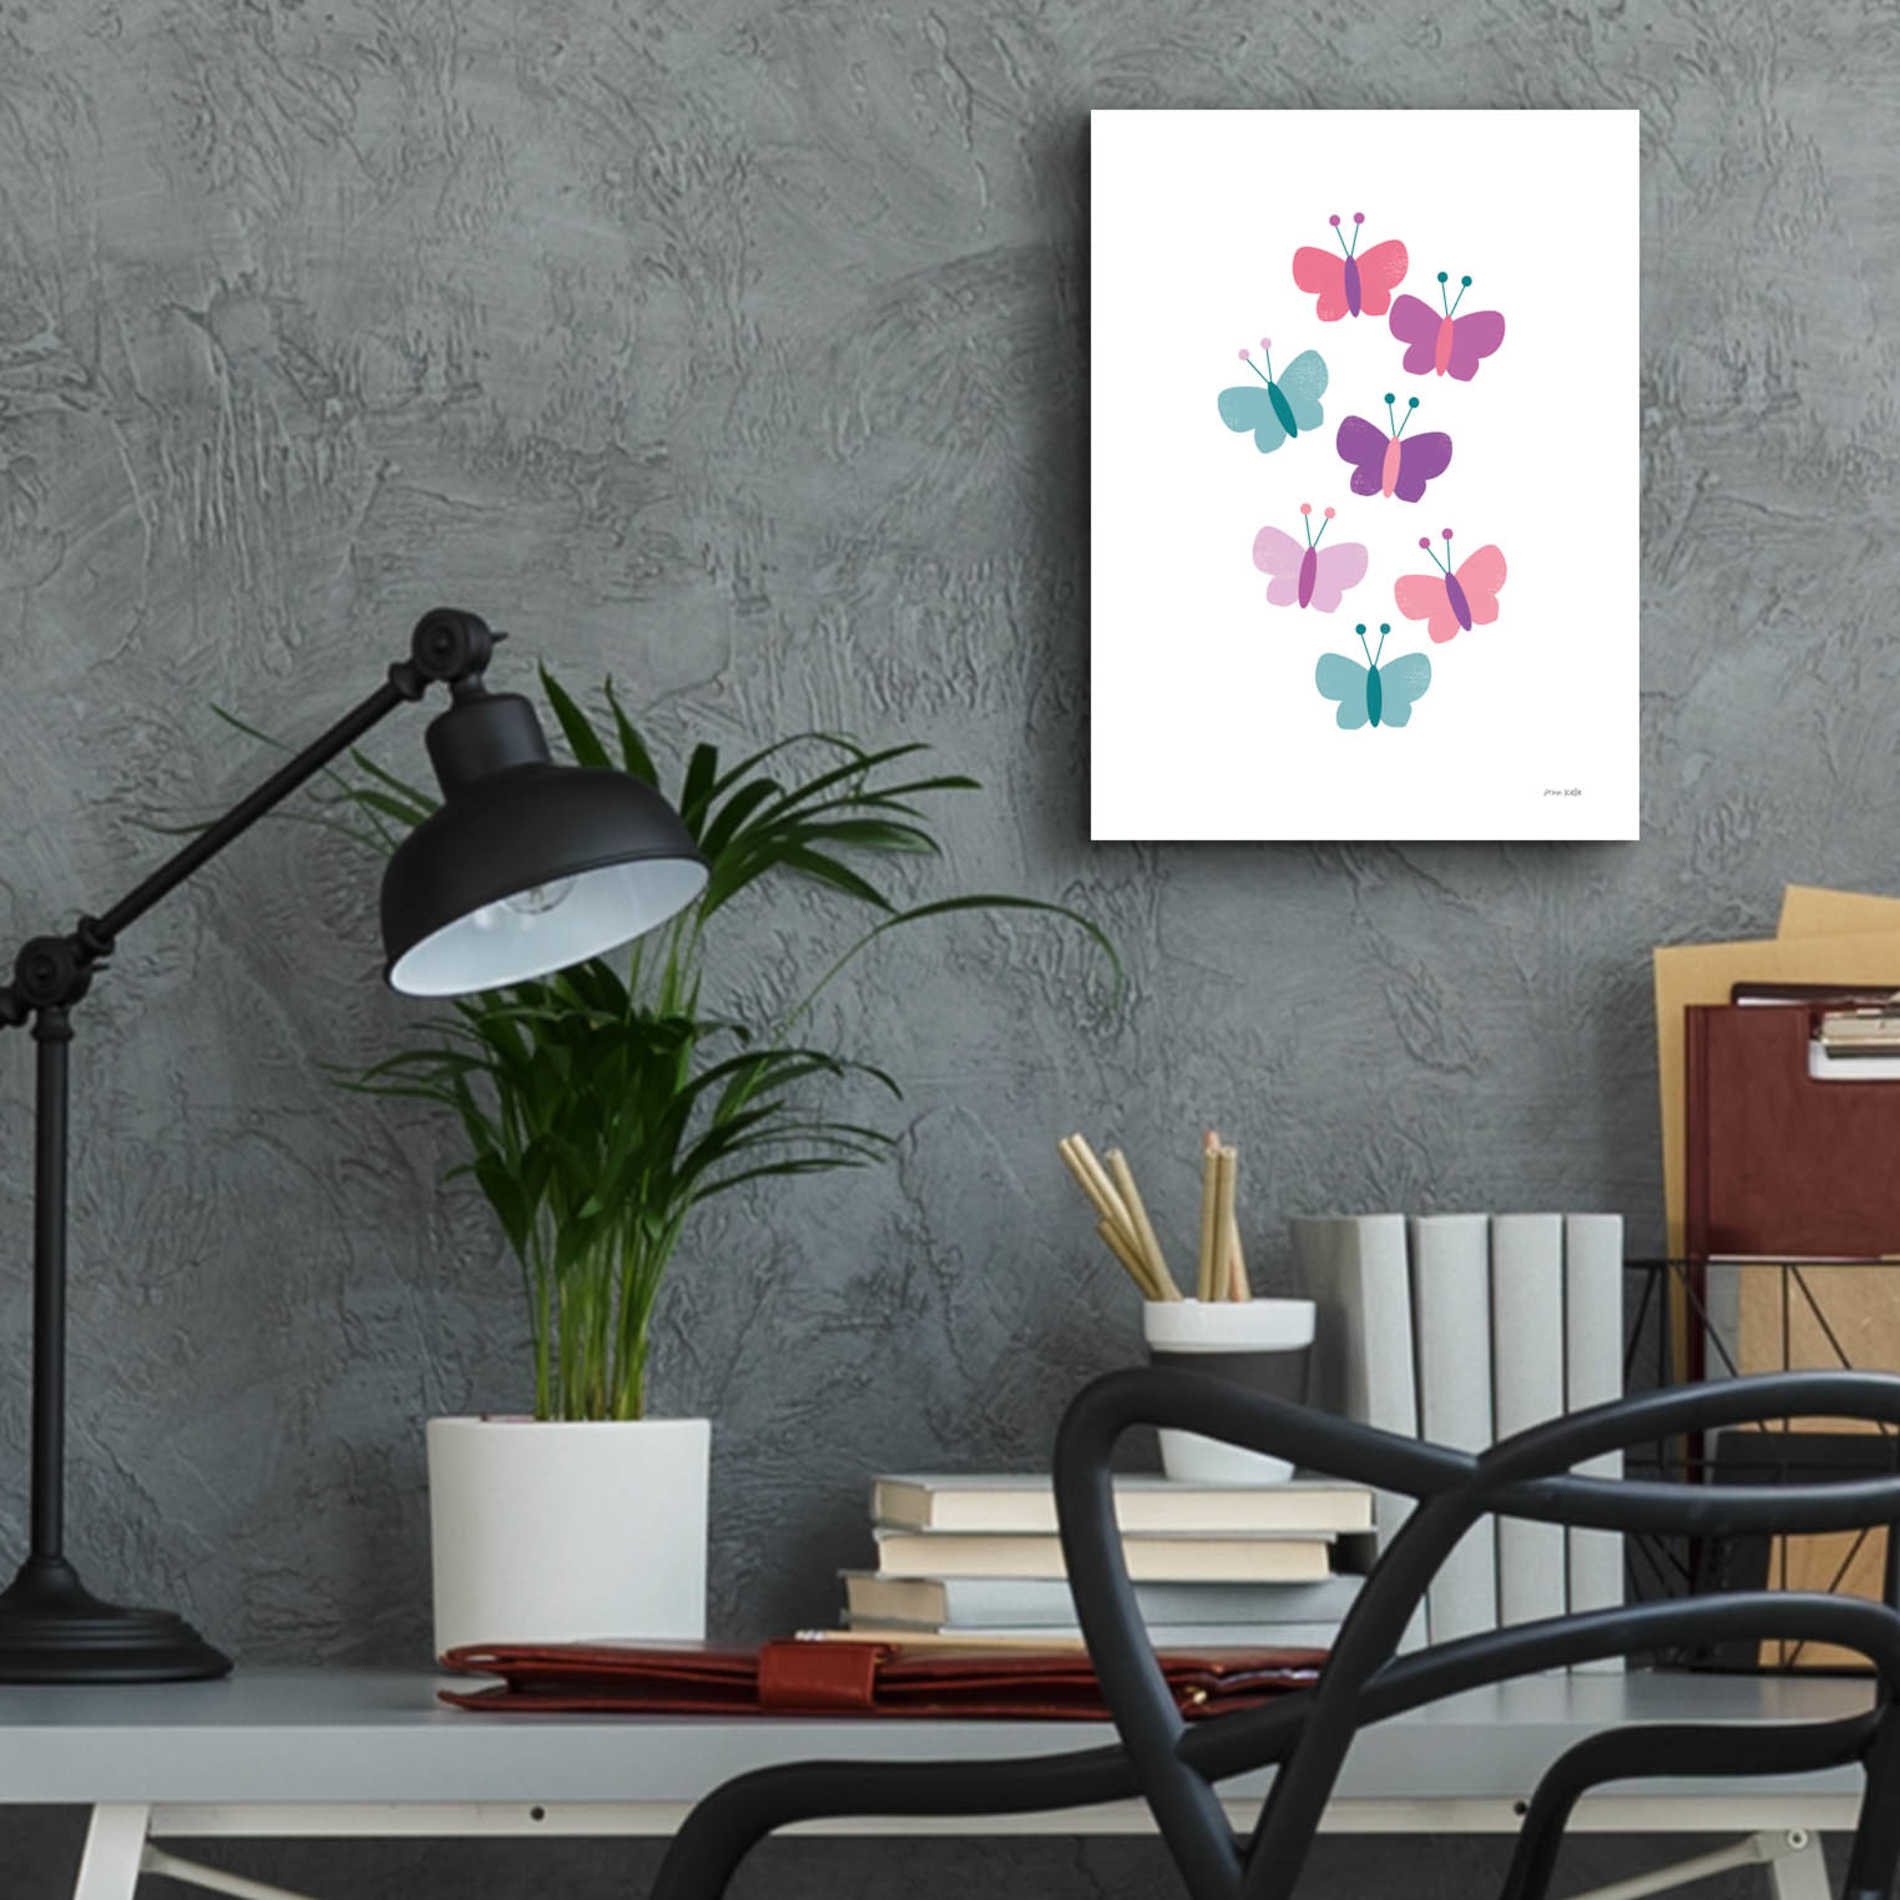 Epic Art 'Butterfly Friends Girly' by Ann Kelle Designs, Acrylic Glass Wall Art,12x16